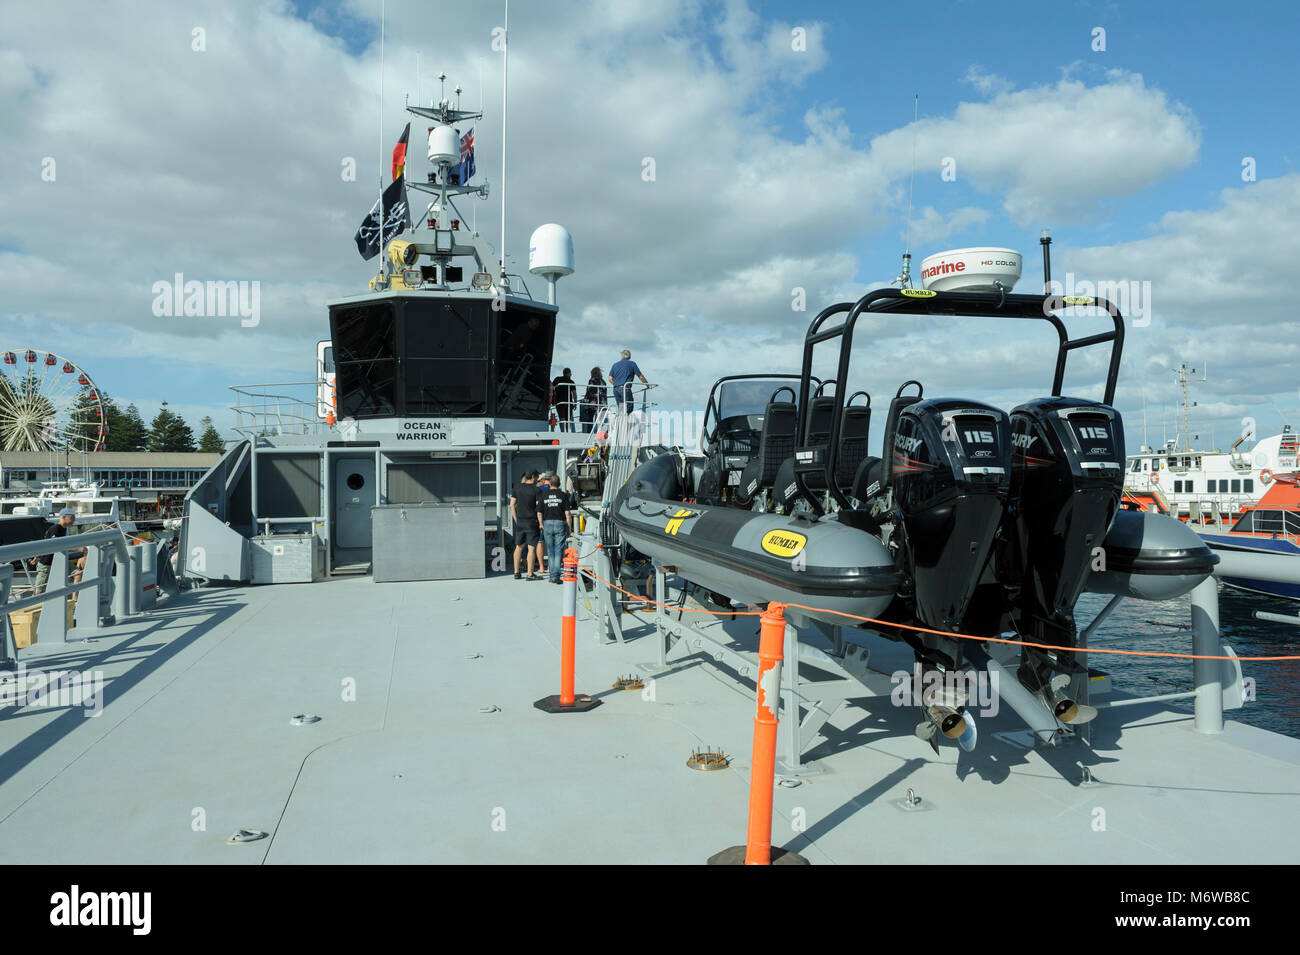 Pont et pont de la Sea Shepherd's fabriqué sur commande, le navire de patrouille à grande vitesse, le 'Ocean Warrior', avec 'gonflable' Humber voile fixé sur le pont Banque D'Images